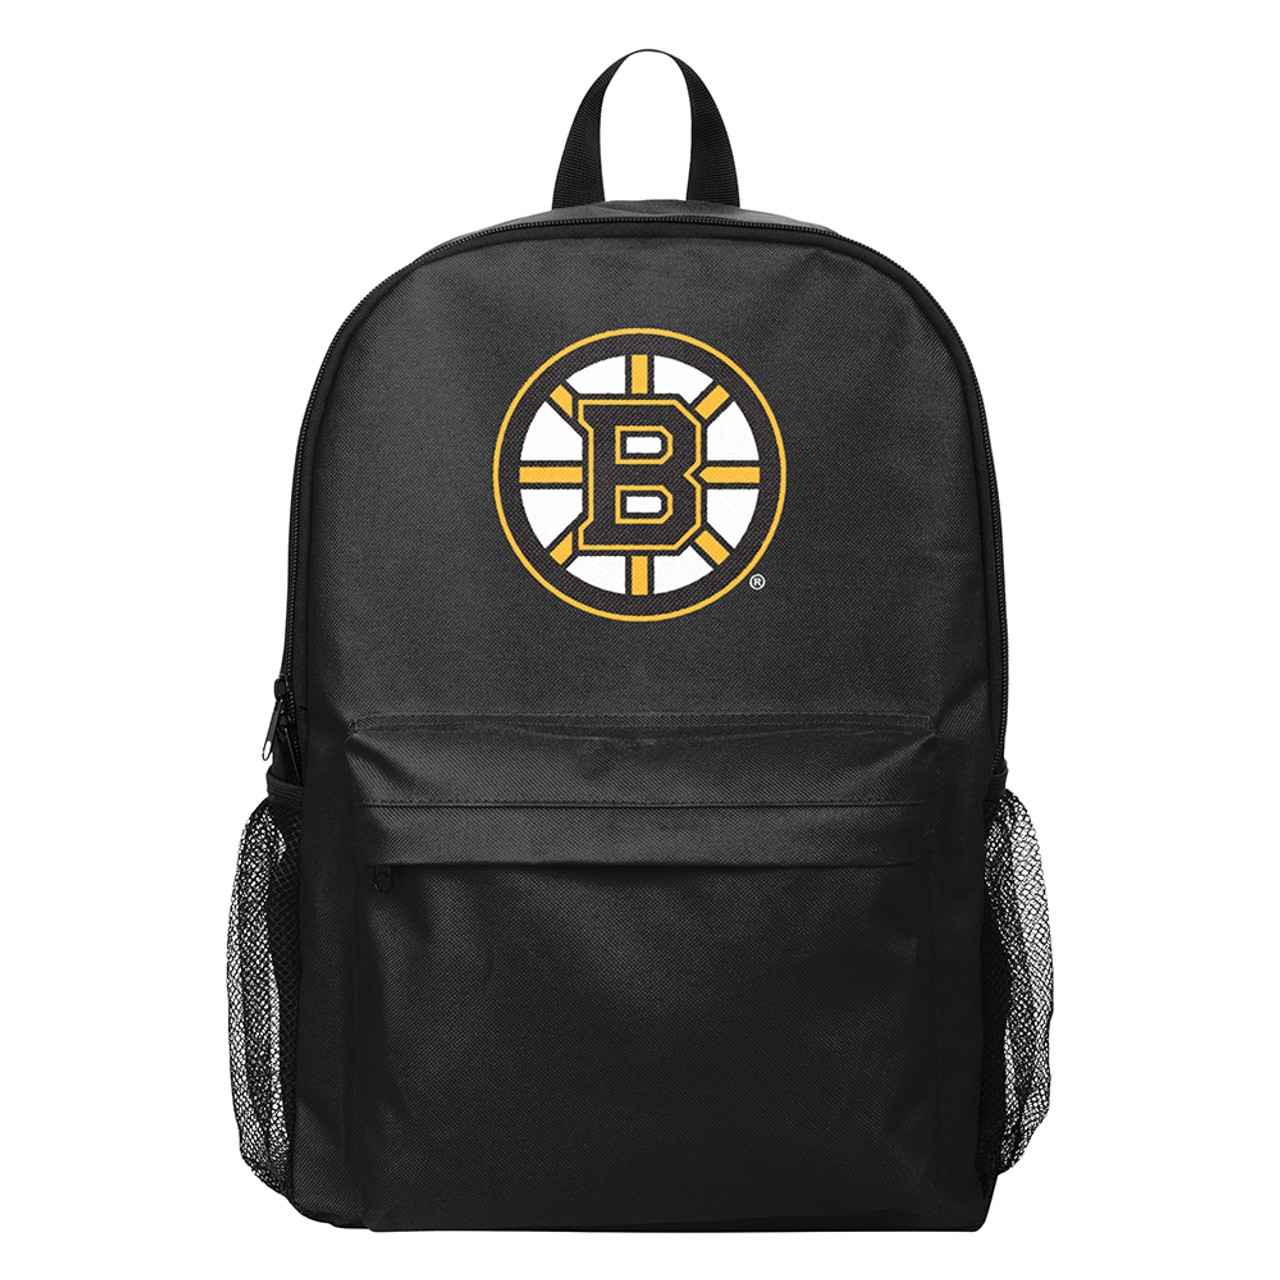 Boston Bruins Napsack